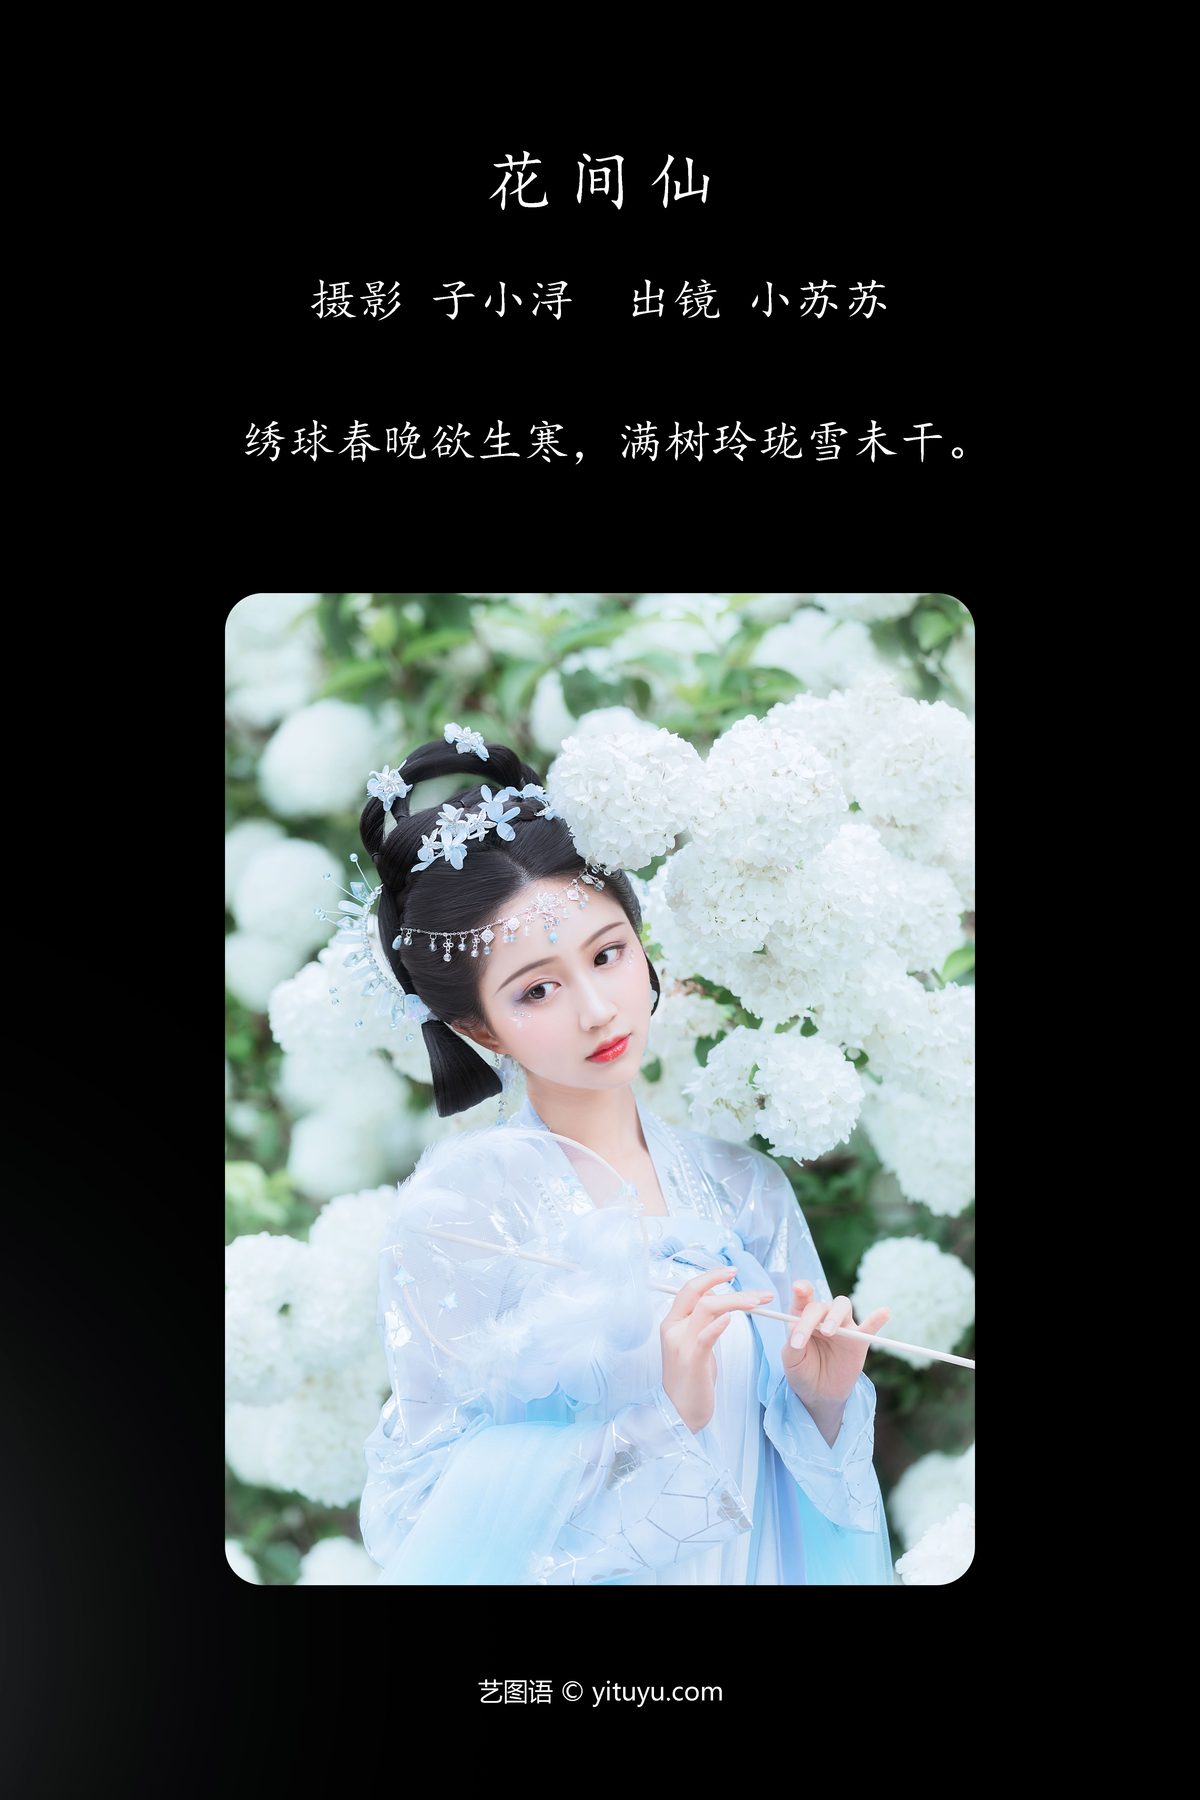 YiTuYu艺图语 Vol 4244 Qi Luo Sheng De Xiao Su Su 0002 0336058790.jpg